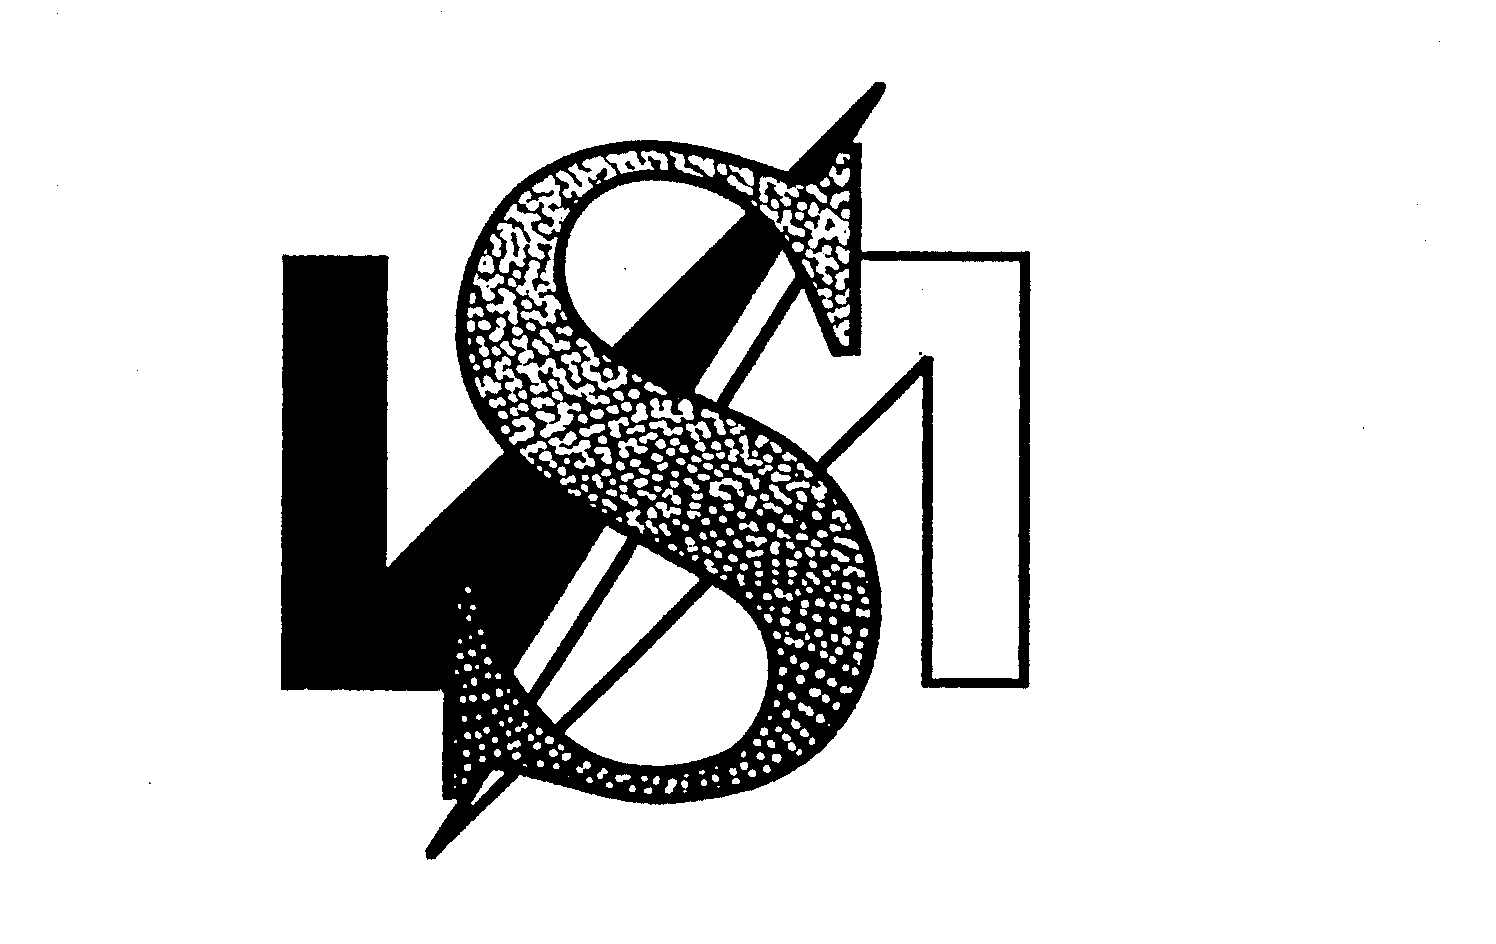 Trademark Logo SVA